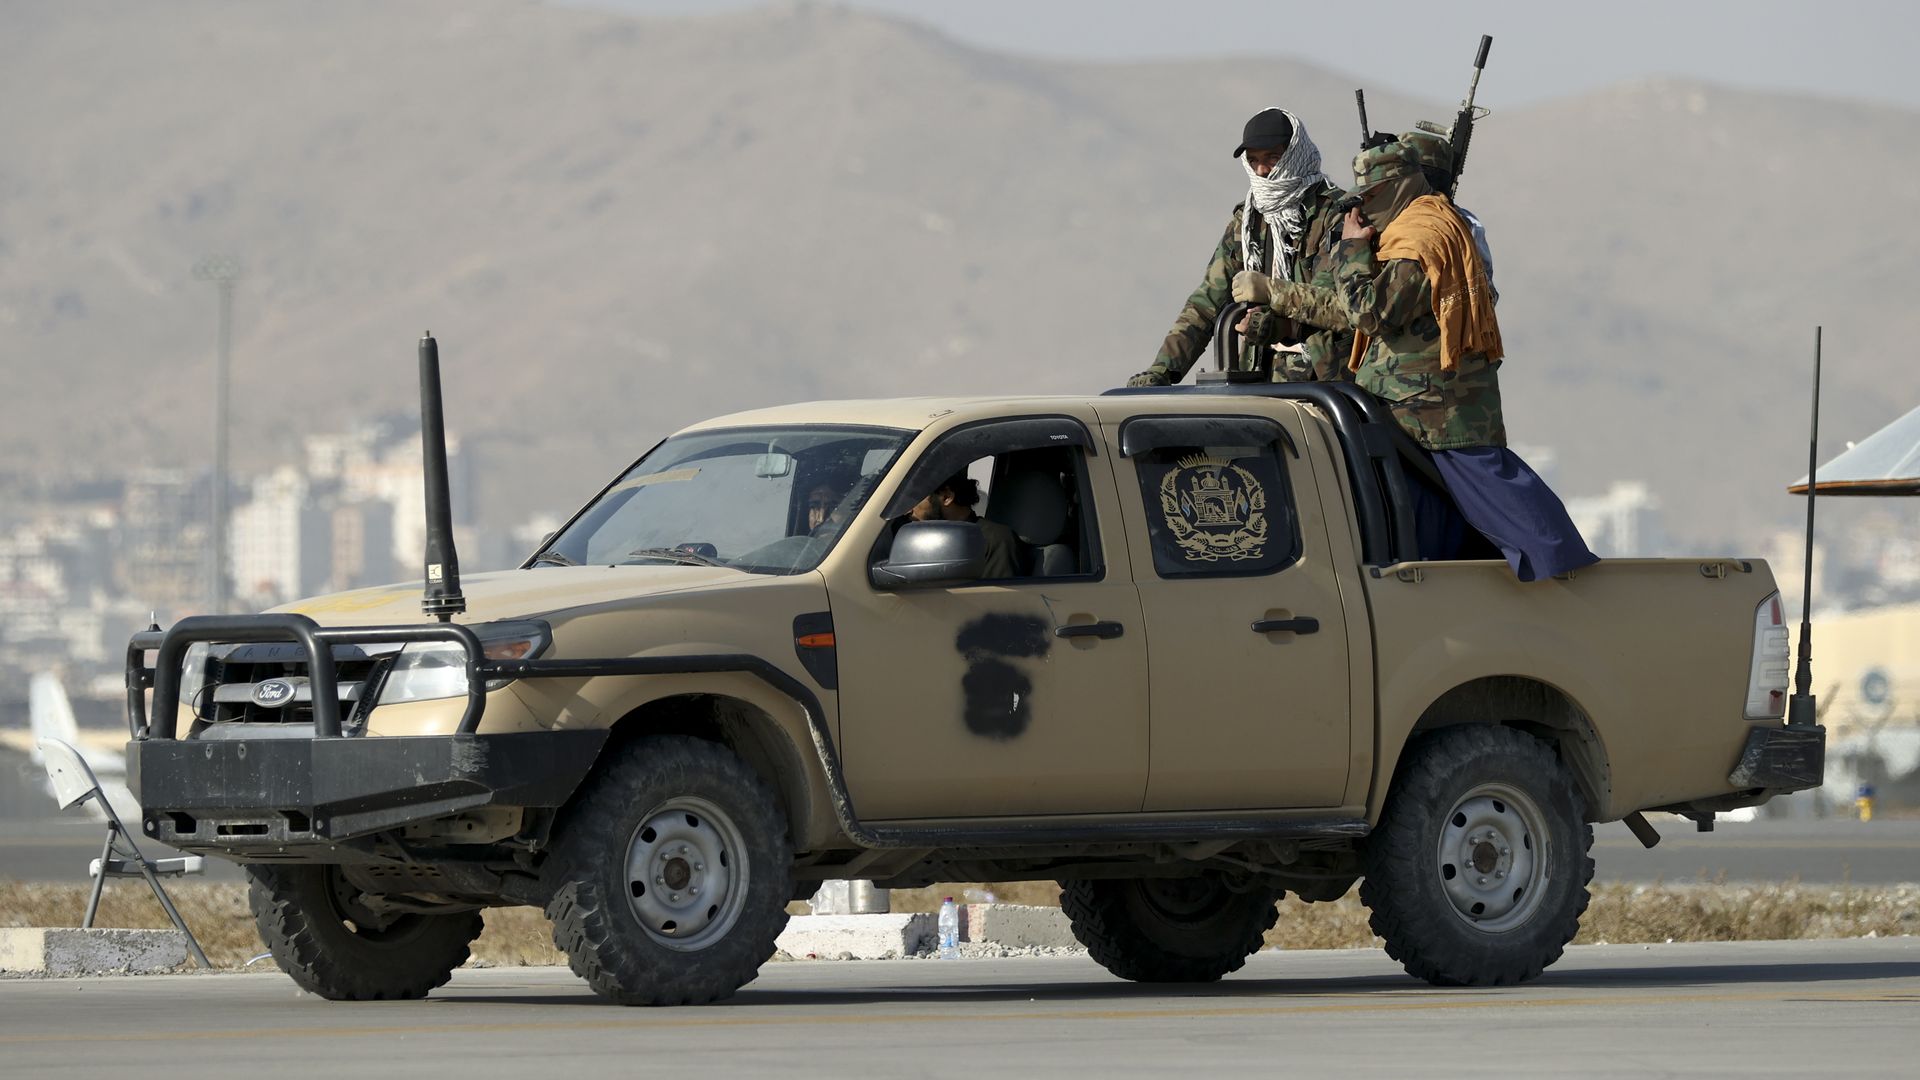  Members of the Taliban movement patrol Kabul airport in  September 